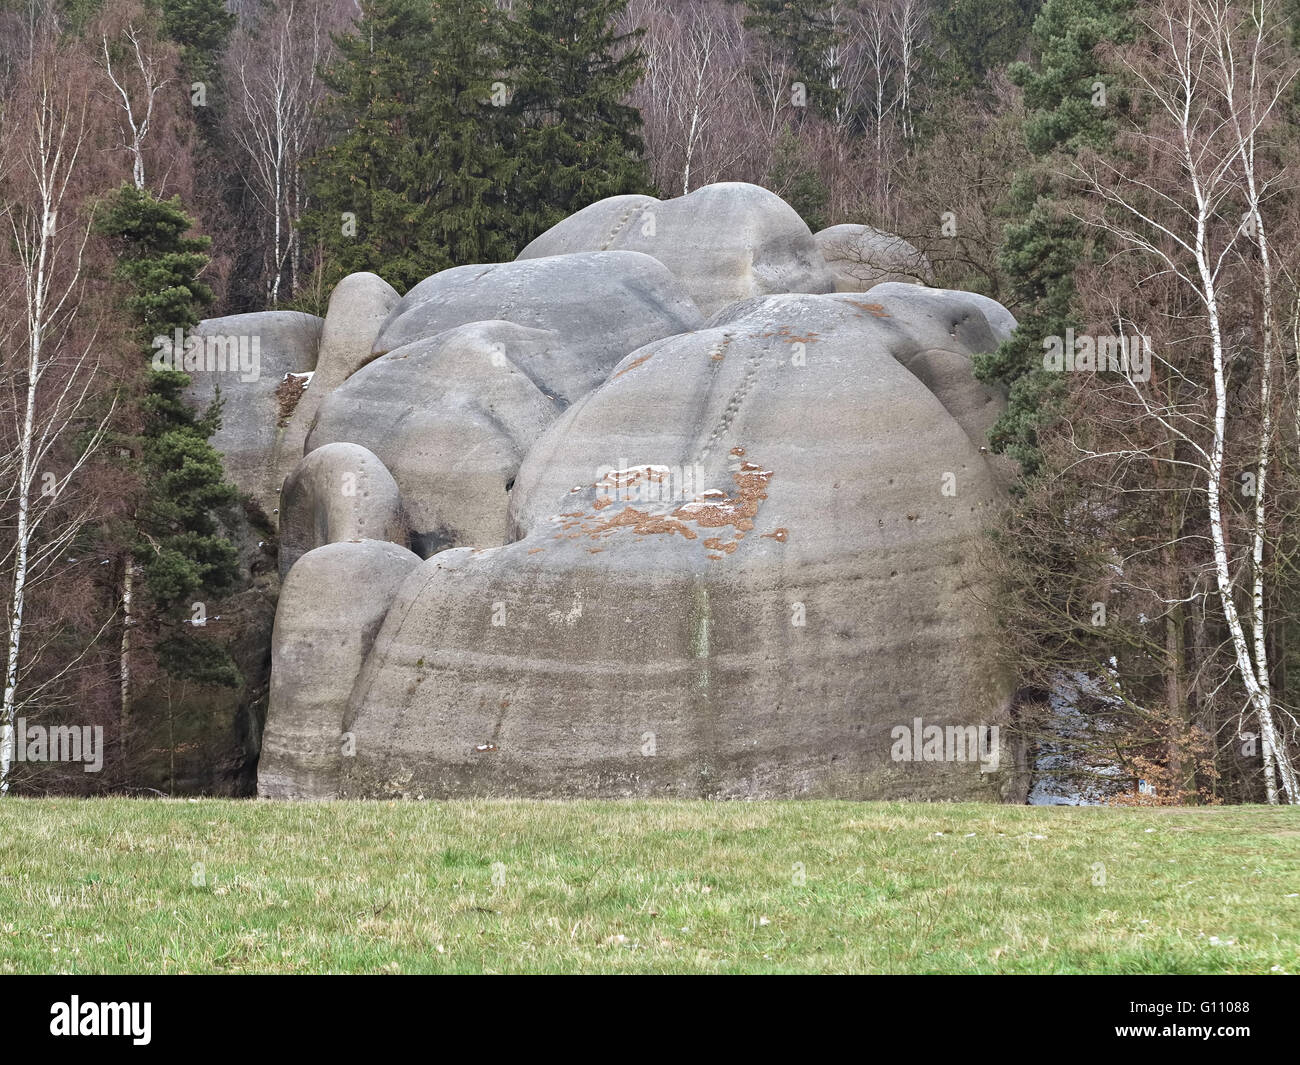 Interessante formazione di roccia - Elephant Rocks - che assomiglia ad un elefante di balneazione Foto Stock